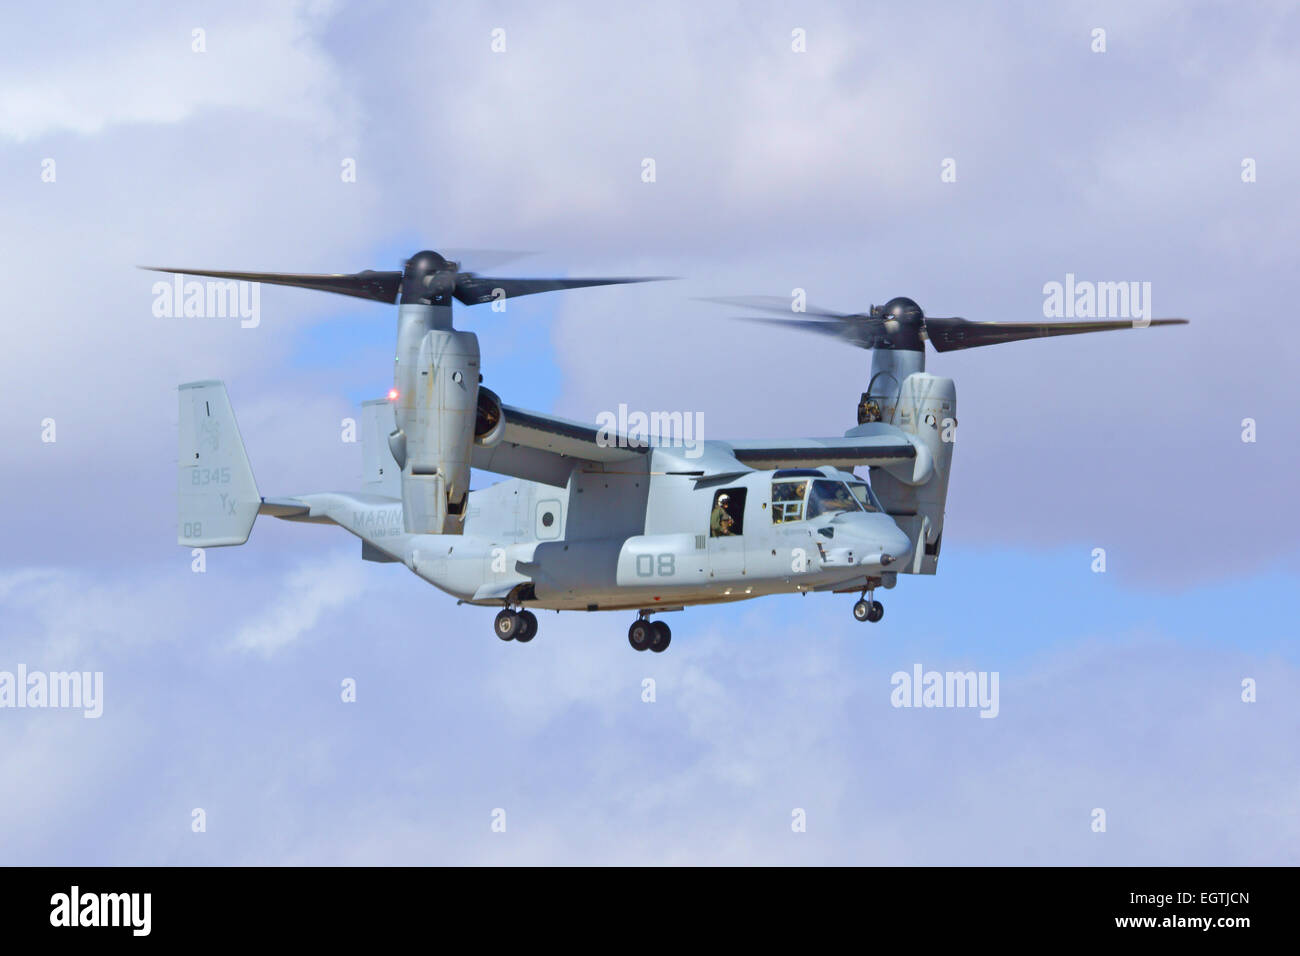 MV-22 Osprey US Military helicopter aircraft flying at 2015 Yuma Air Show at Yuma Marine Air Station Stock Photo